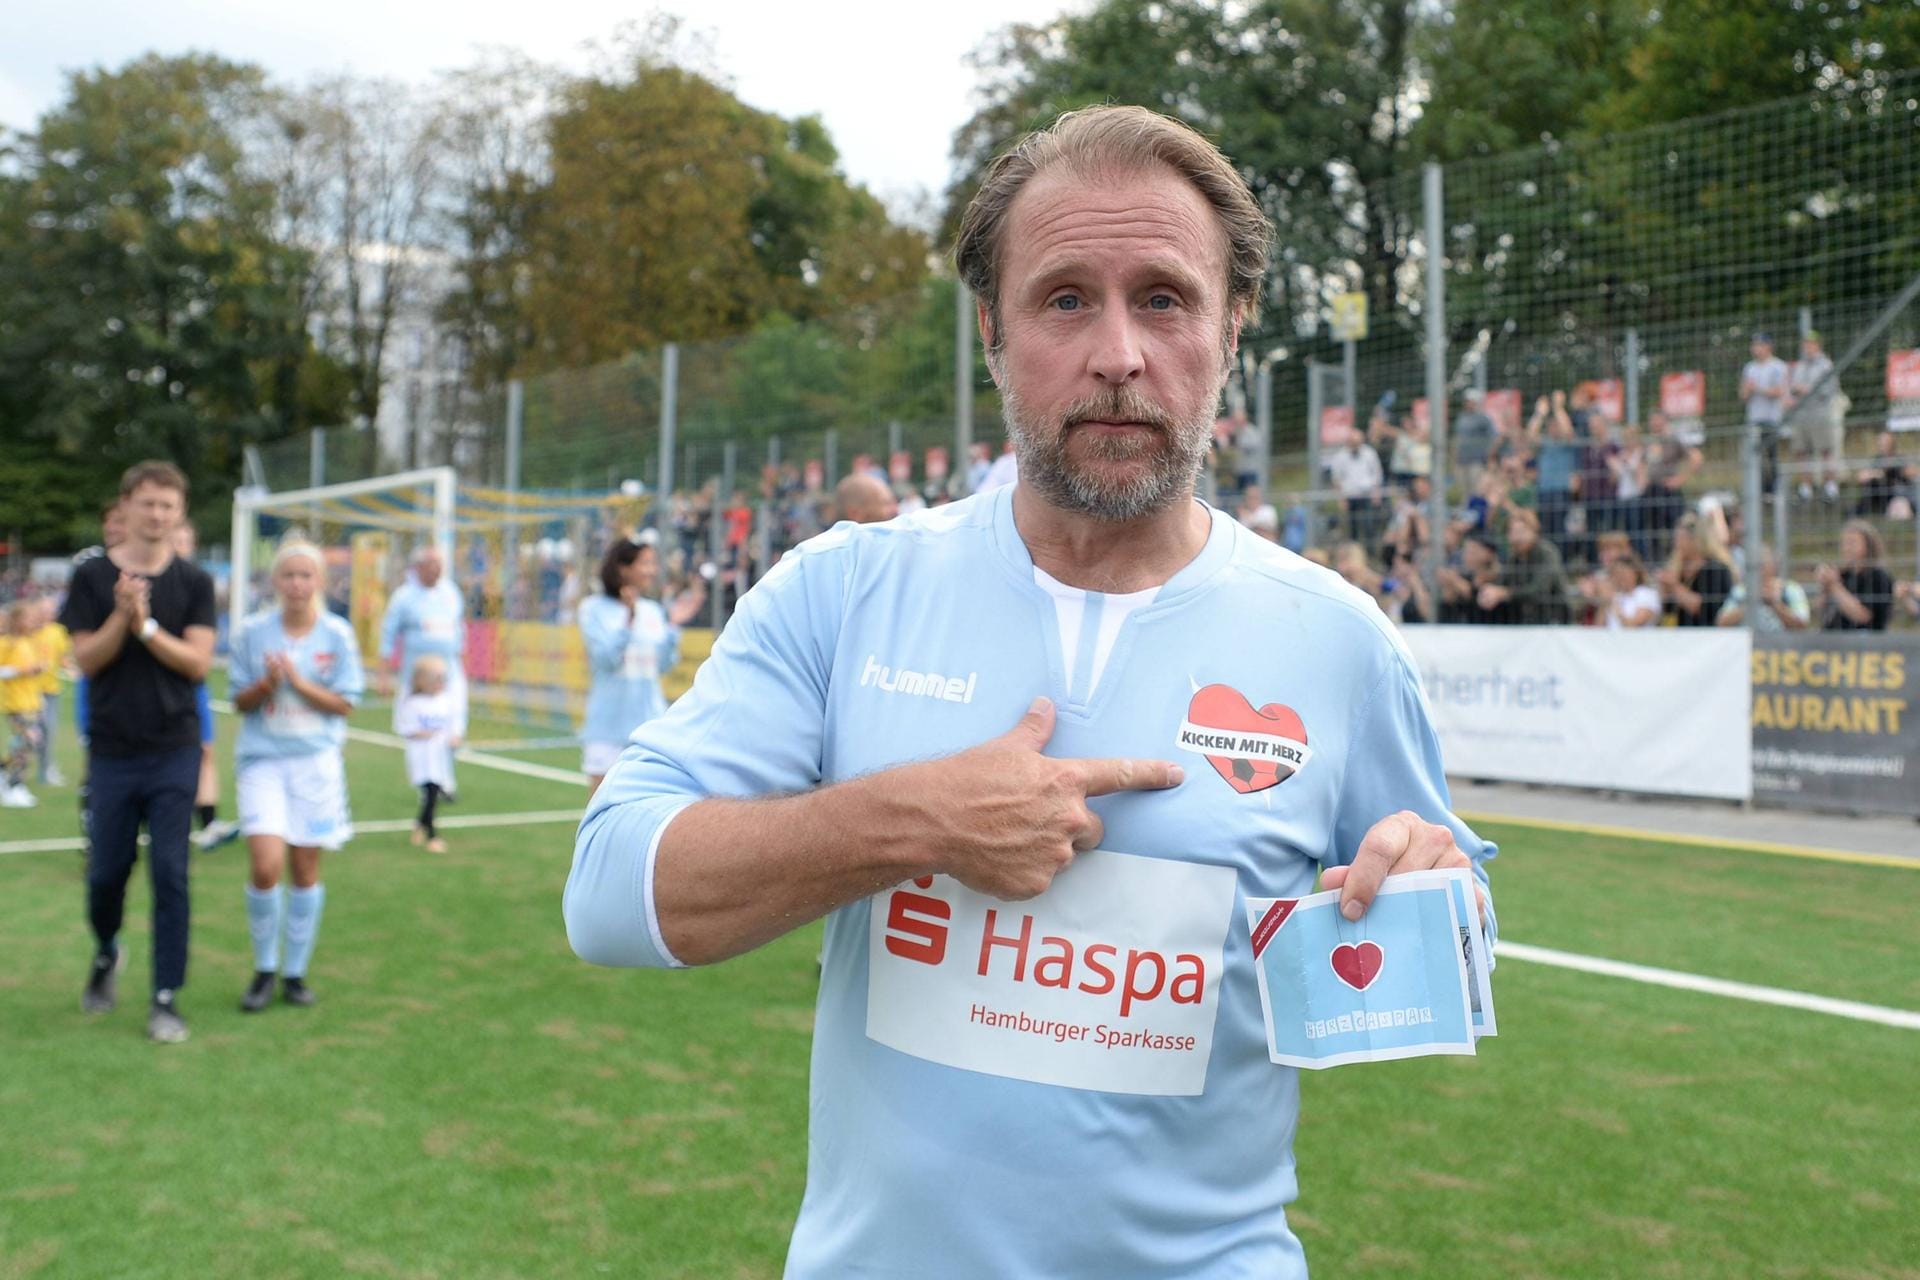 September 2018: Bei "Kicken mit Herz" in Hamburg steht Bjarne Mädel auf dem Spielfeld für den guten Zweck.